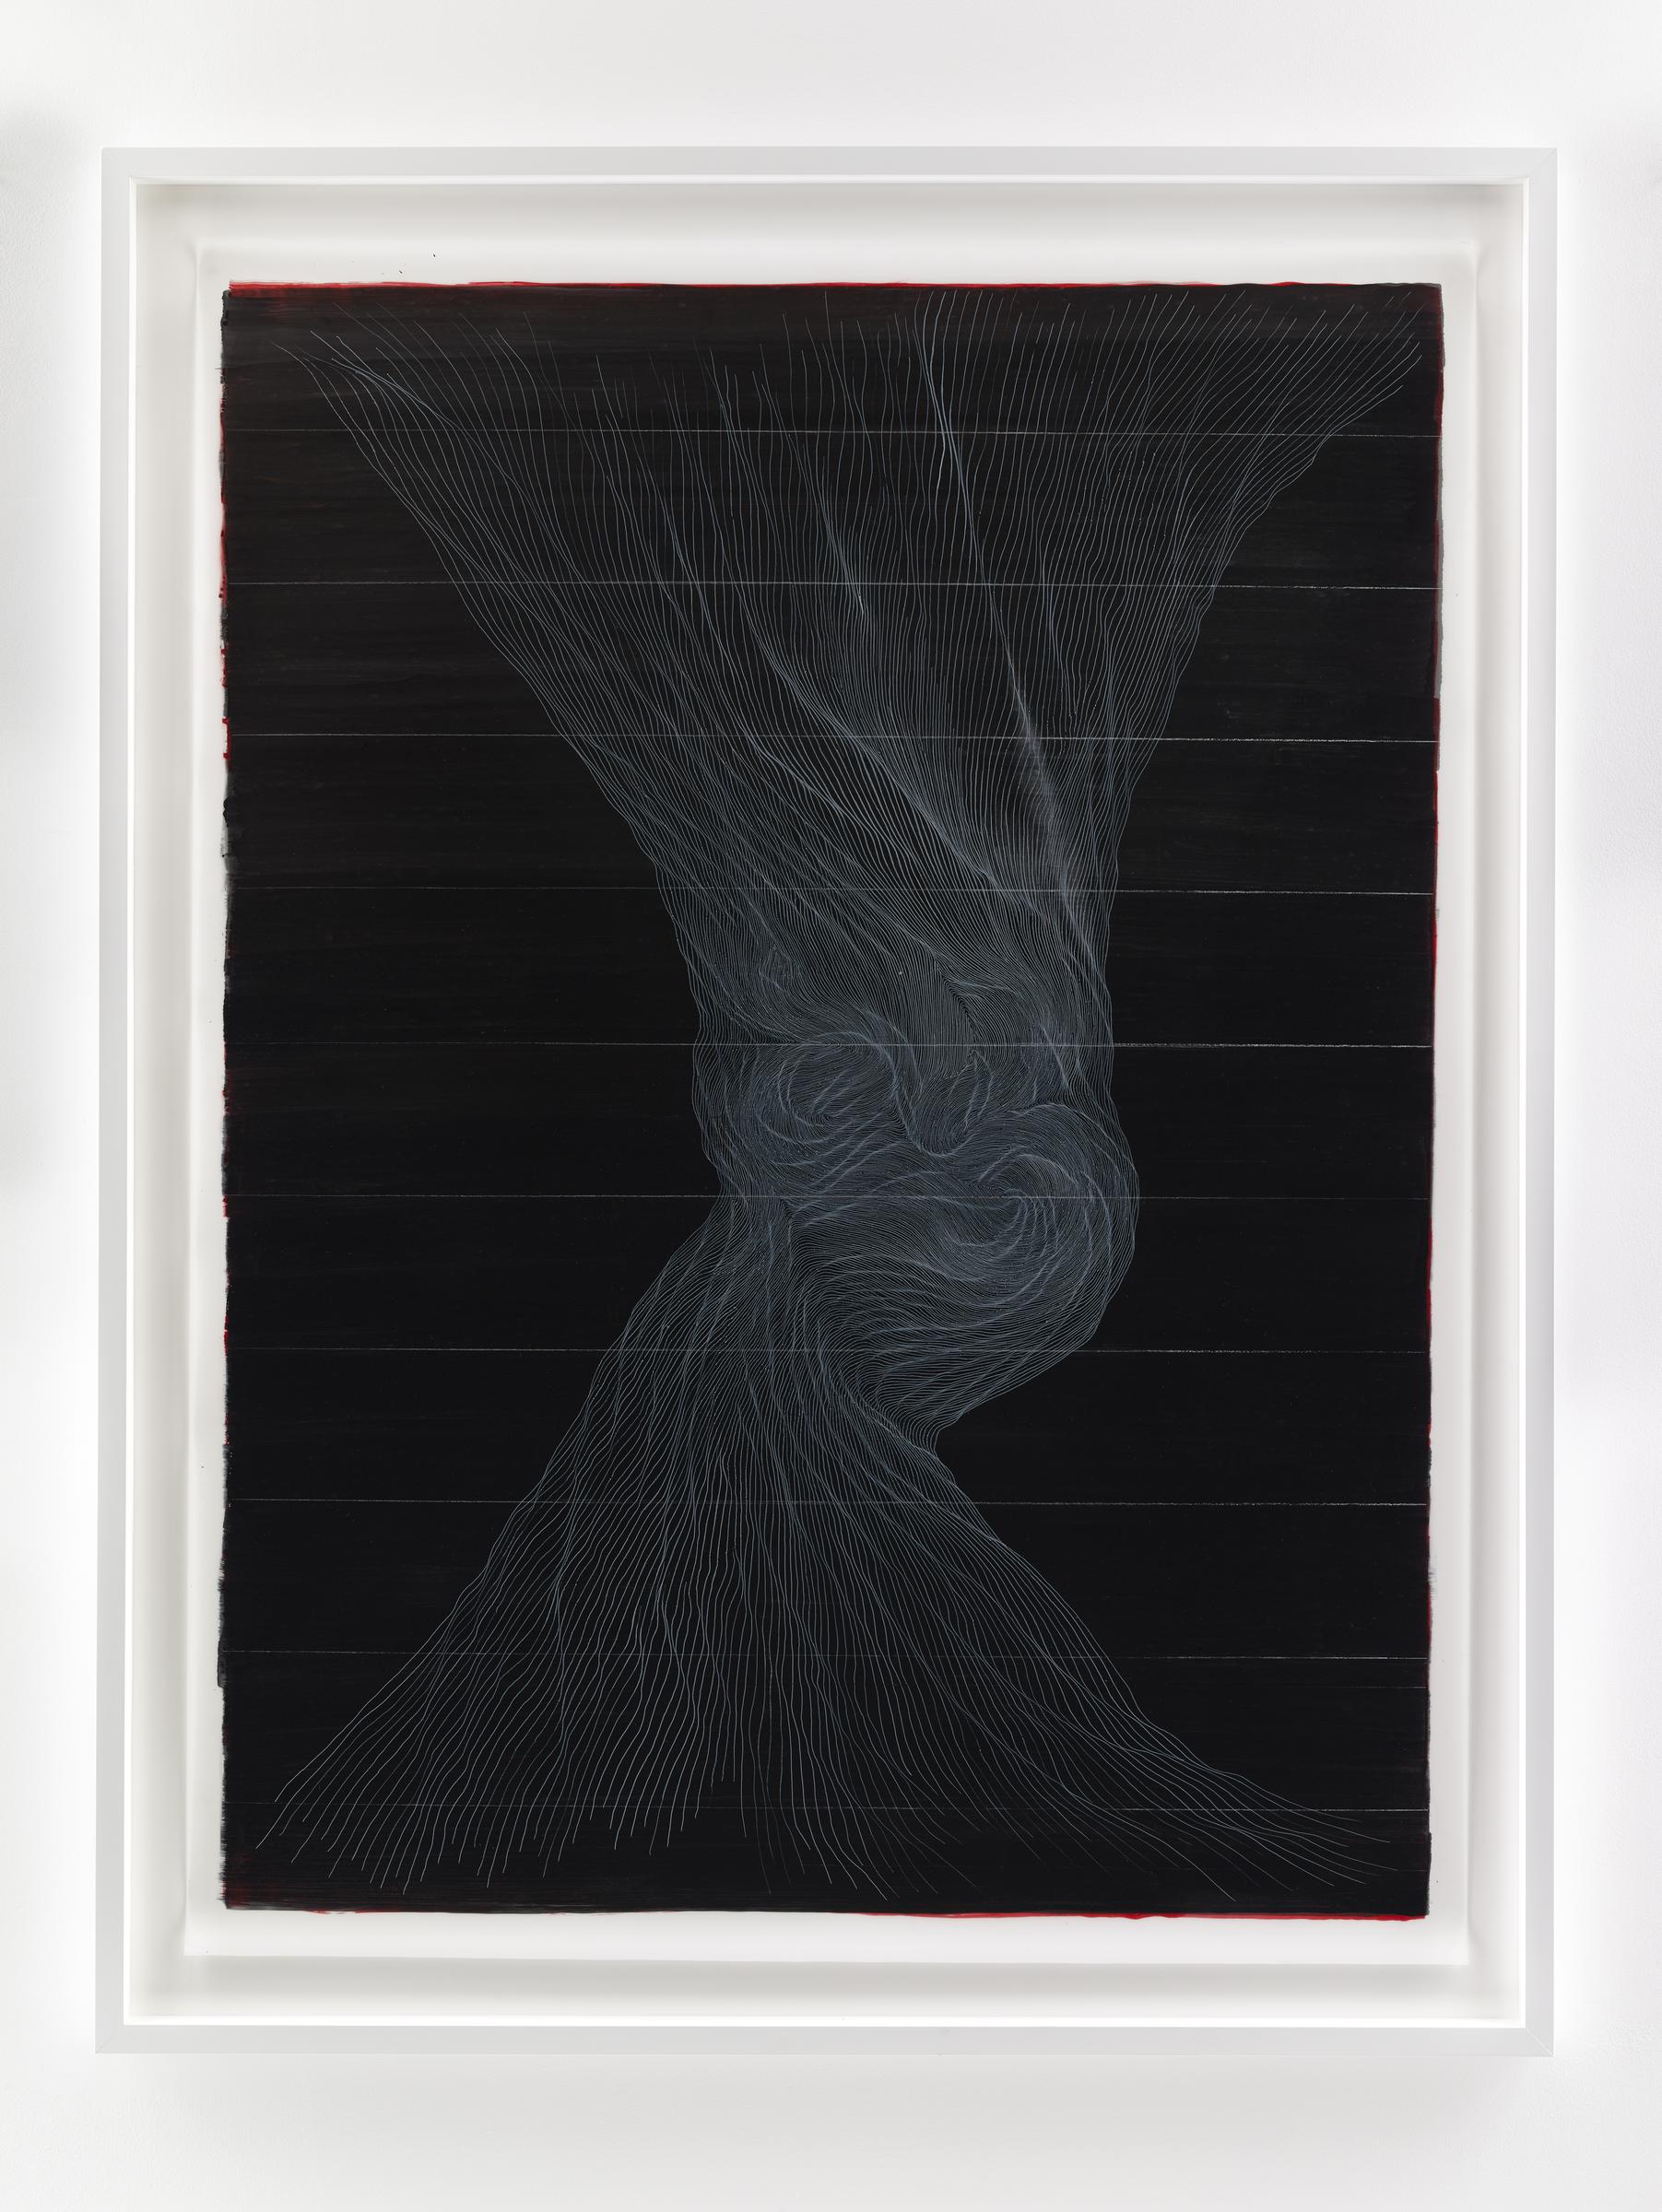 LINN MEYERS Untitled, 2014, ink on mylar, 56 1/2 x 42 inches, SGI2868.